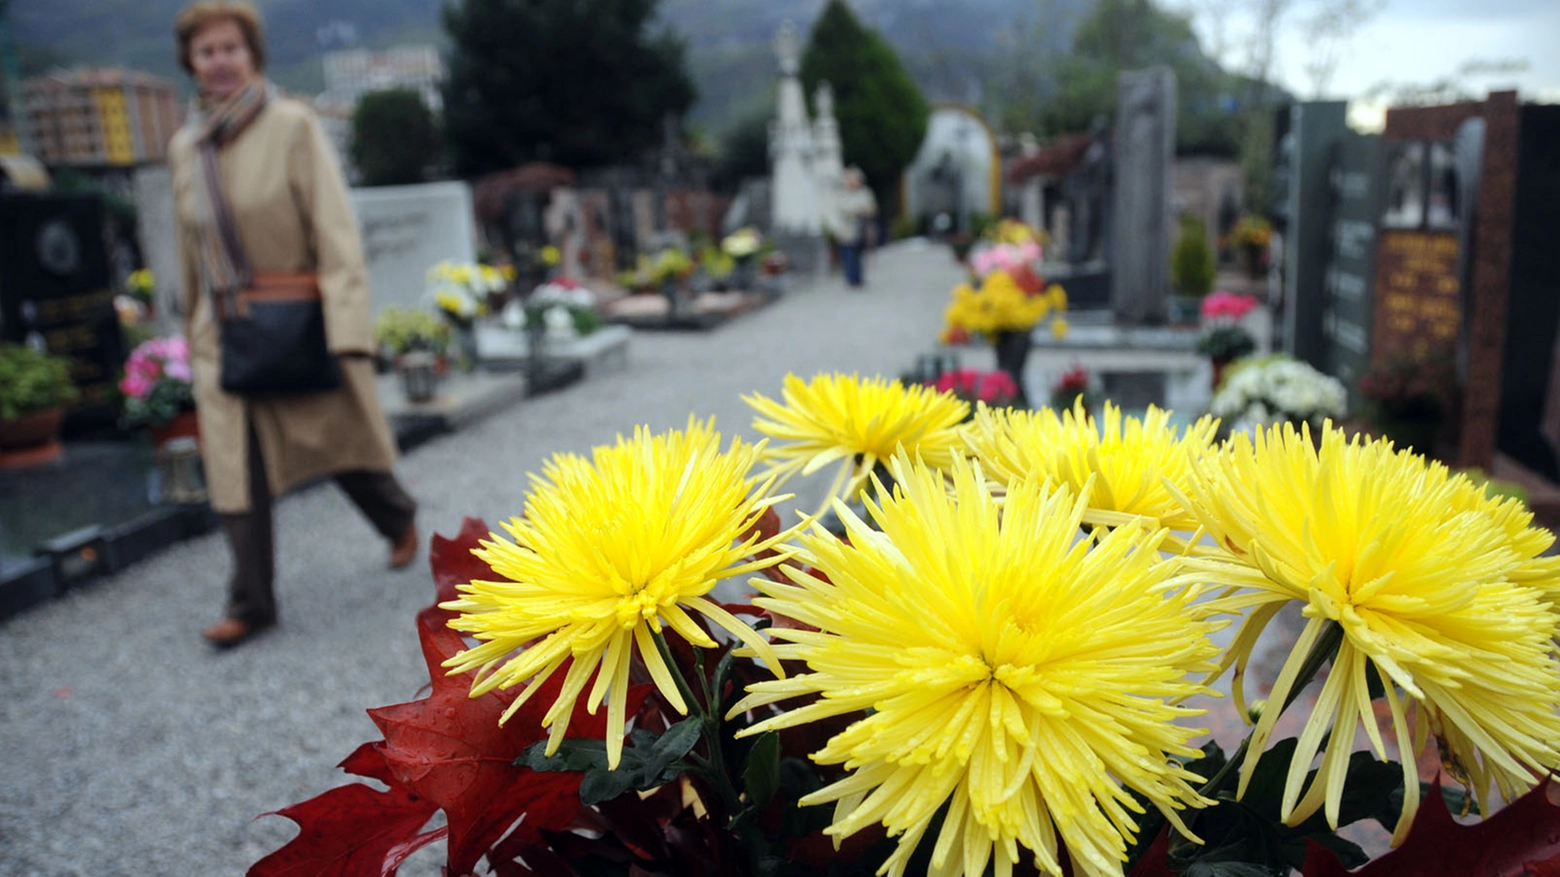 Crisantemi, fiore simbolo della festa dei morti (Cardini)